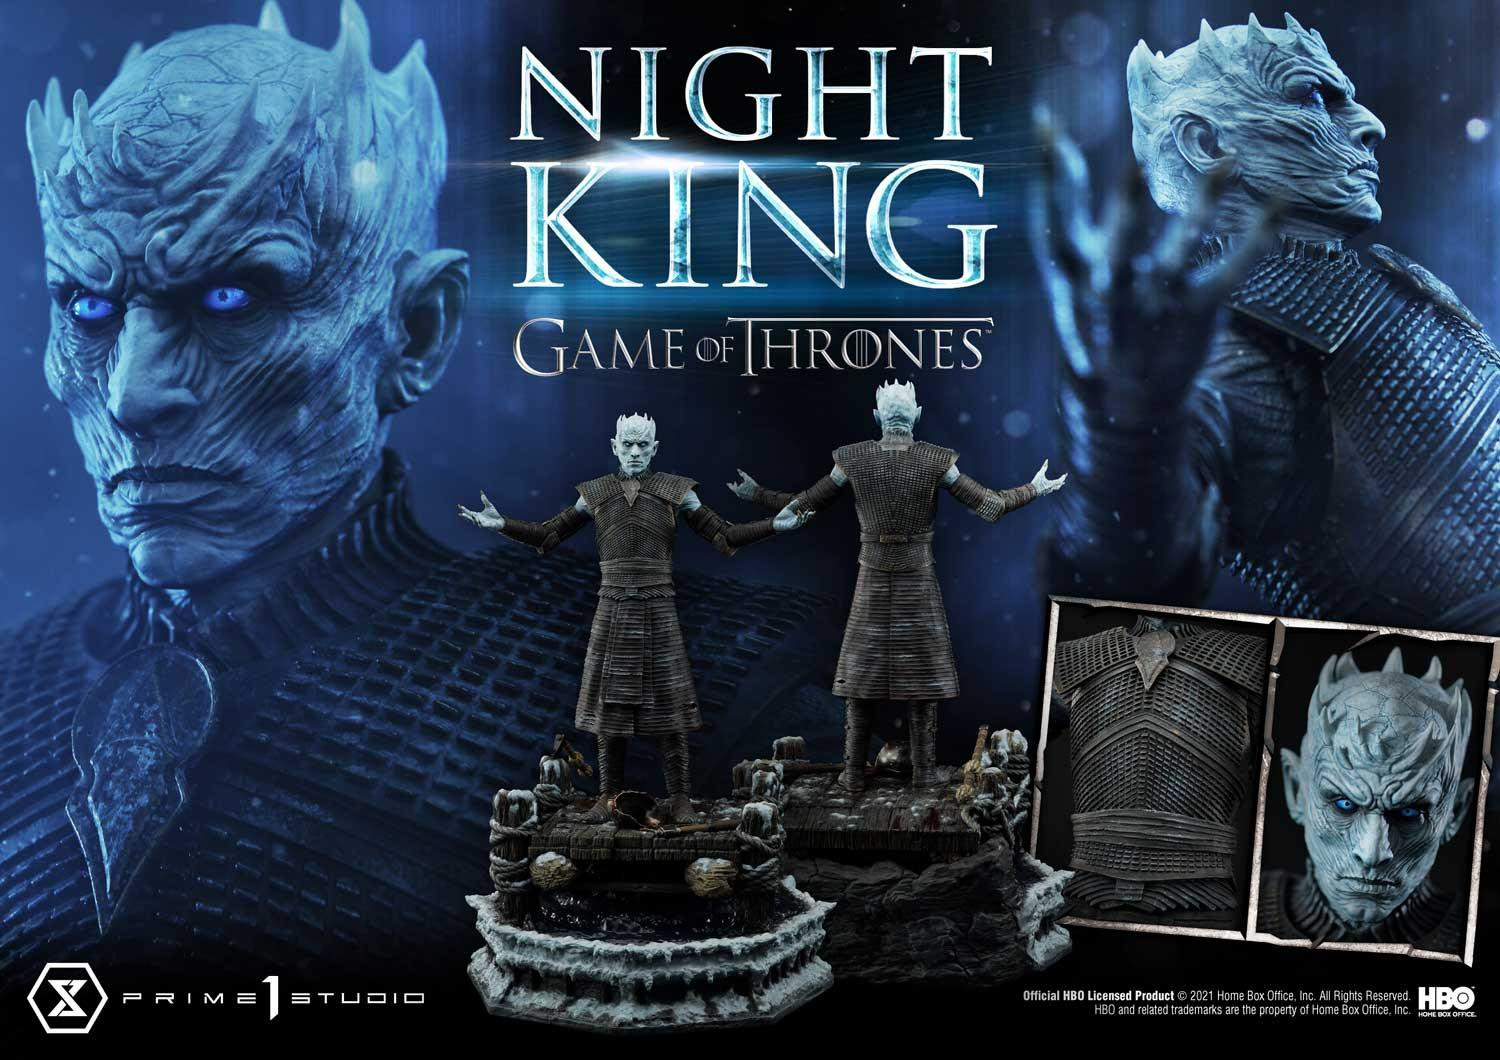 [新闻资讯] prime 1 studio:《权力的游戏》夜王 night king 1/3 雕像